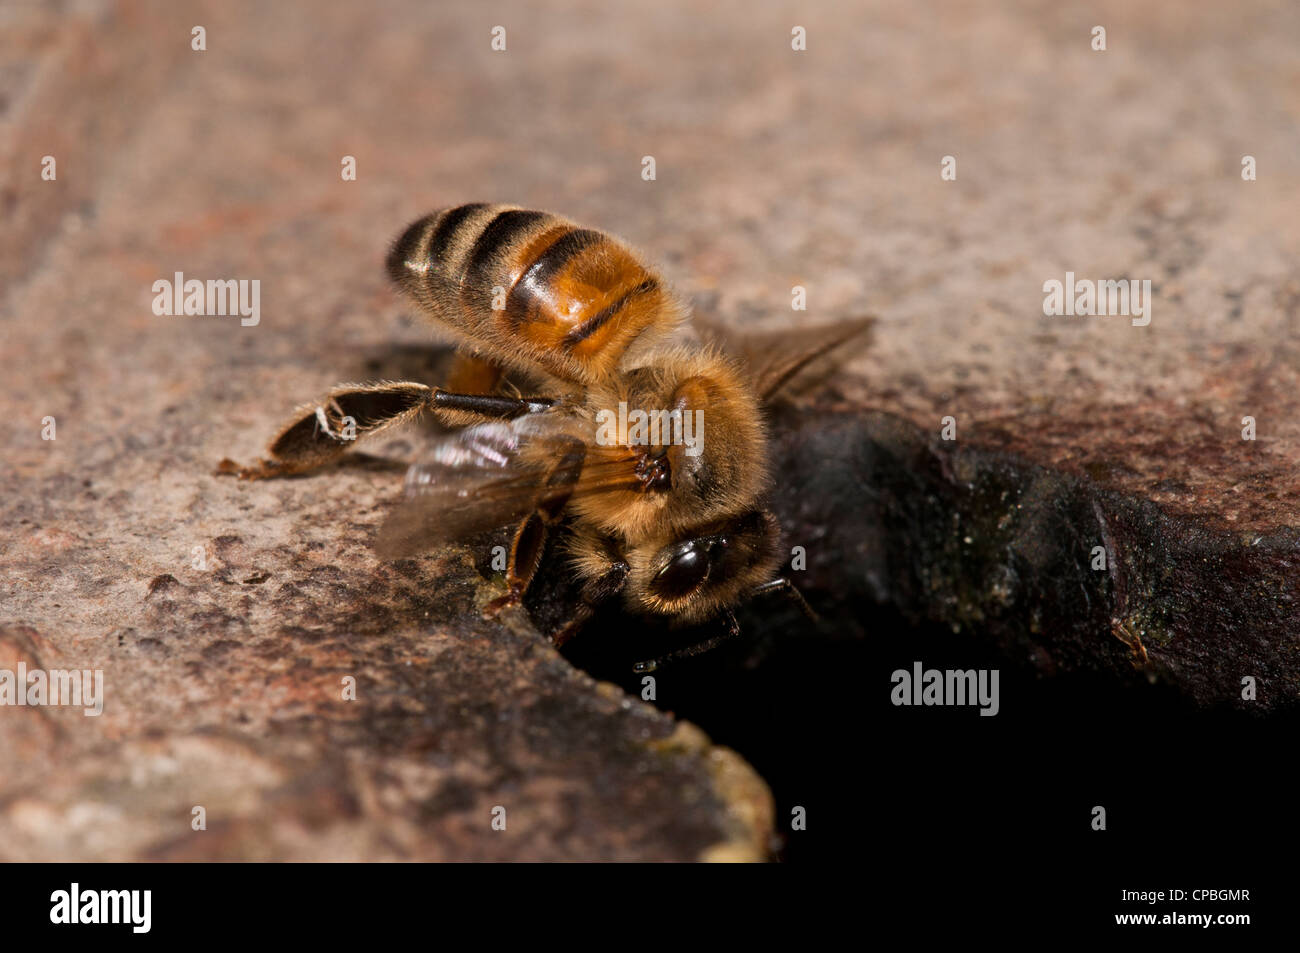 Un travailleur d'une abeille domestique (Apis mellifera) retourner au nid après la recherche de nourriture. Nature Rerserve glosas emilianenses, Bexley, Kent. Juillet. Banque D'Images